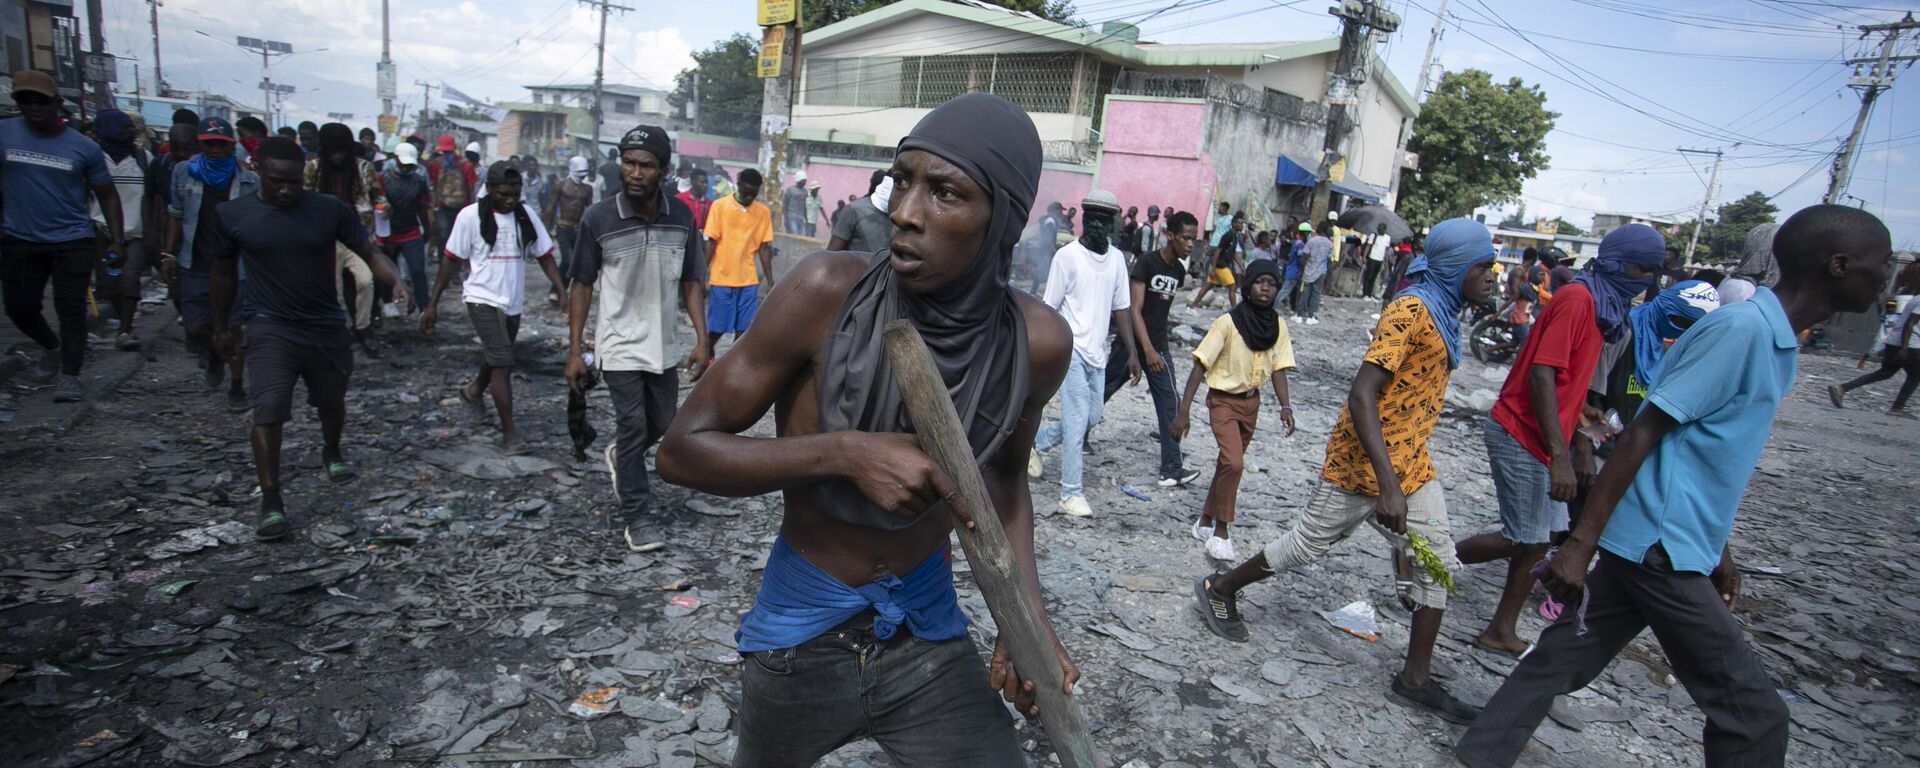 Un manifestante en Haití porta un trozo de madera que simula un arma durante una protesta que exige la dimisión del primer ministro, Ariel Henry - Sputnik Mundo, 1920, 26.12.2022